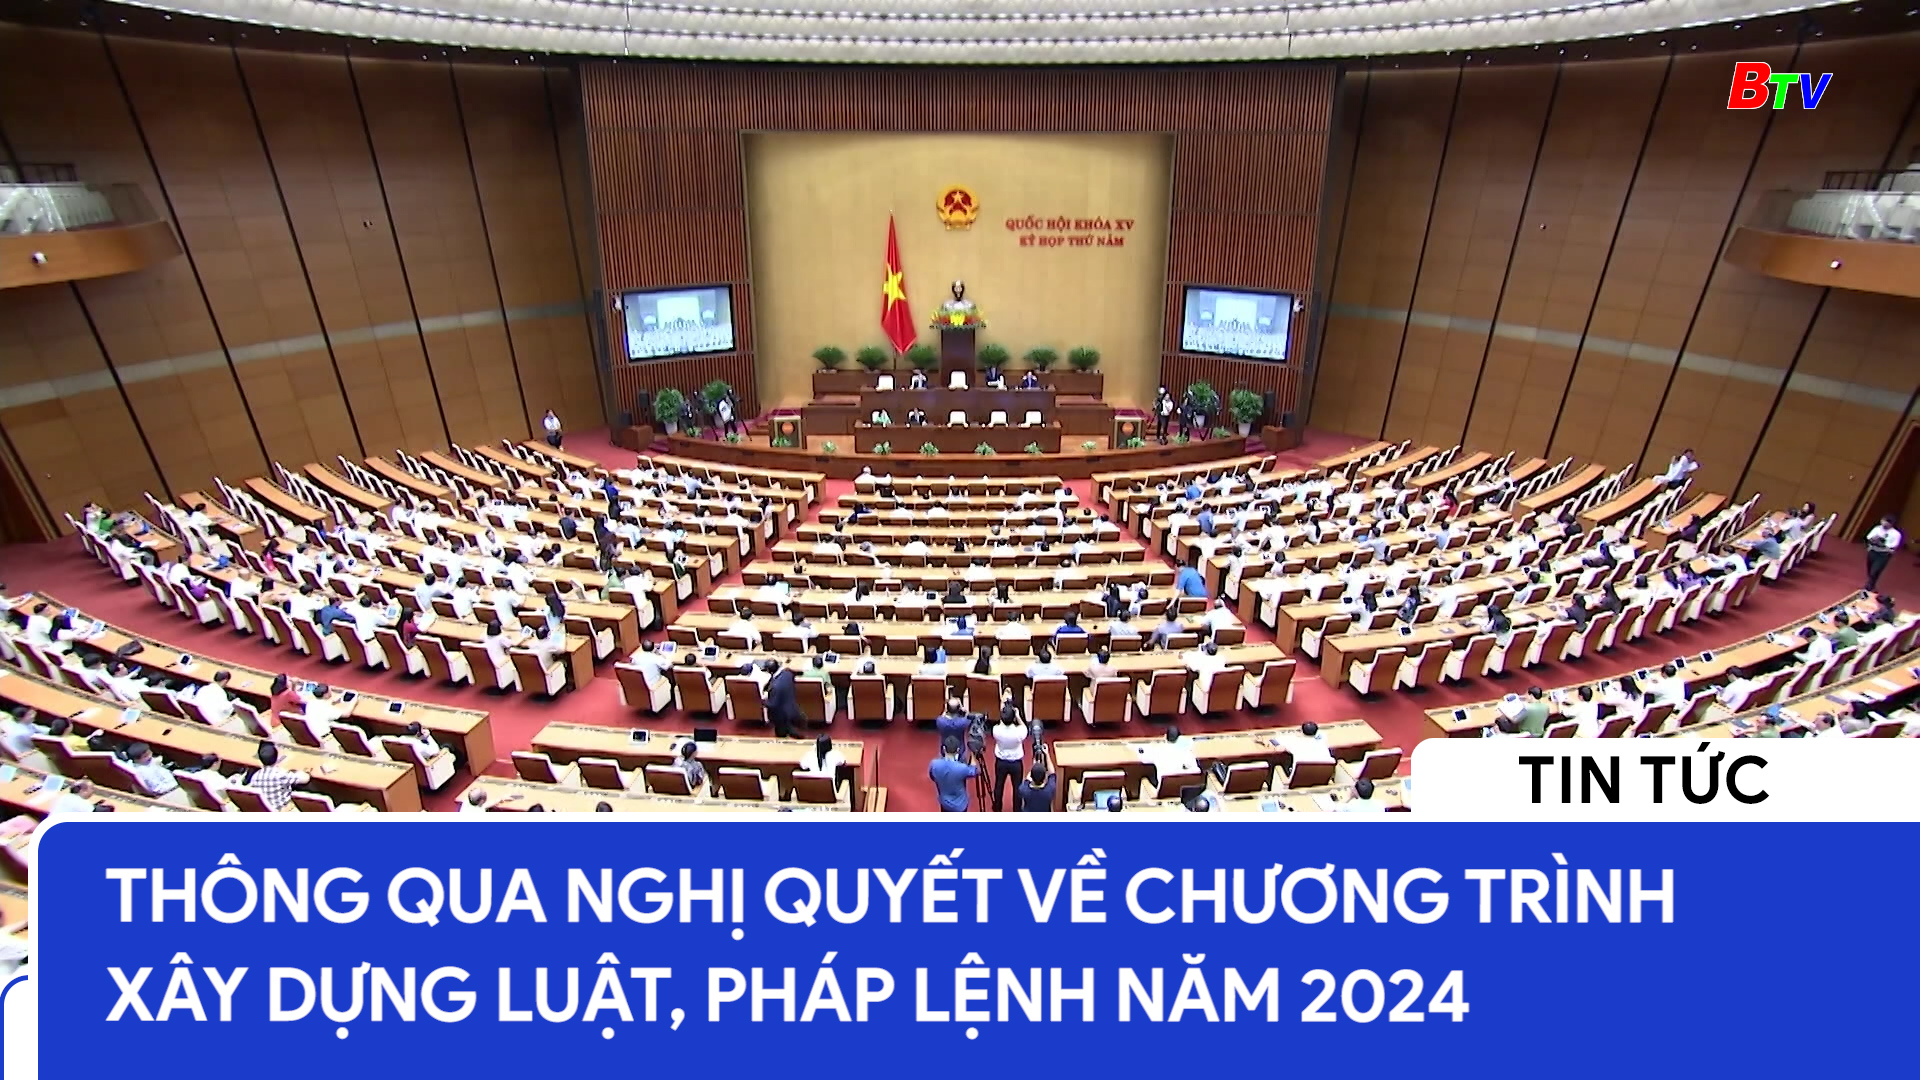 Thông qua nghị quyết về chương trình xây dựng luật, pháp lệnh năm 2024